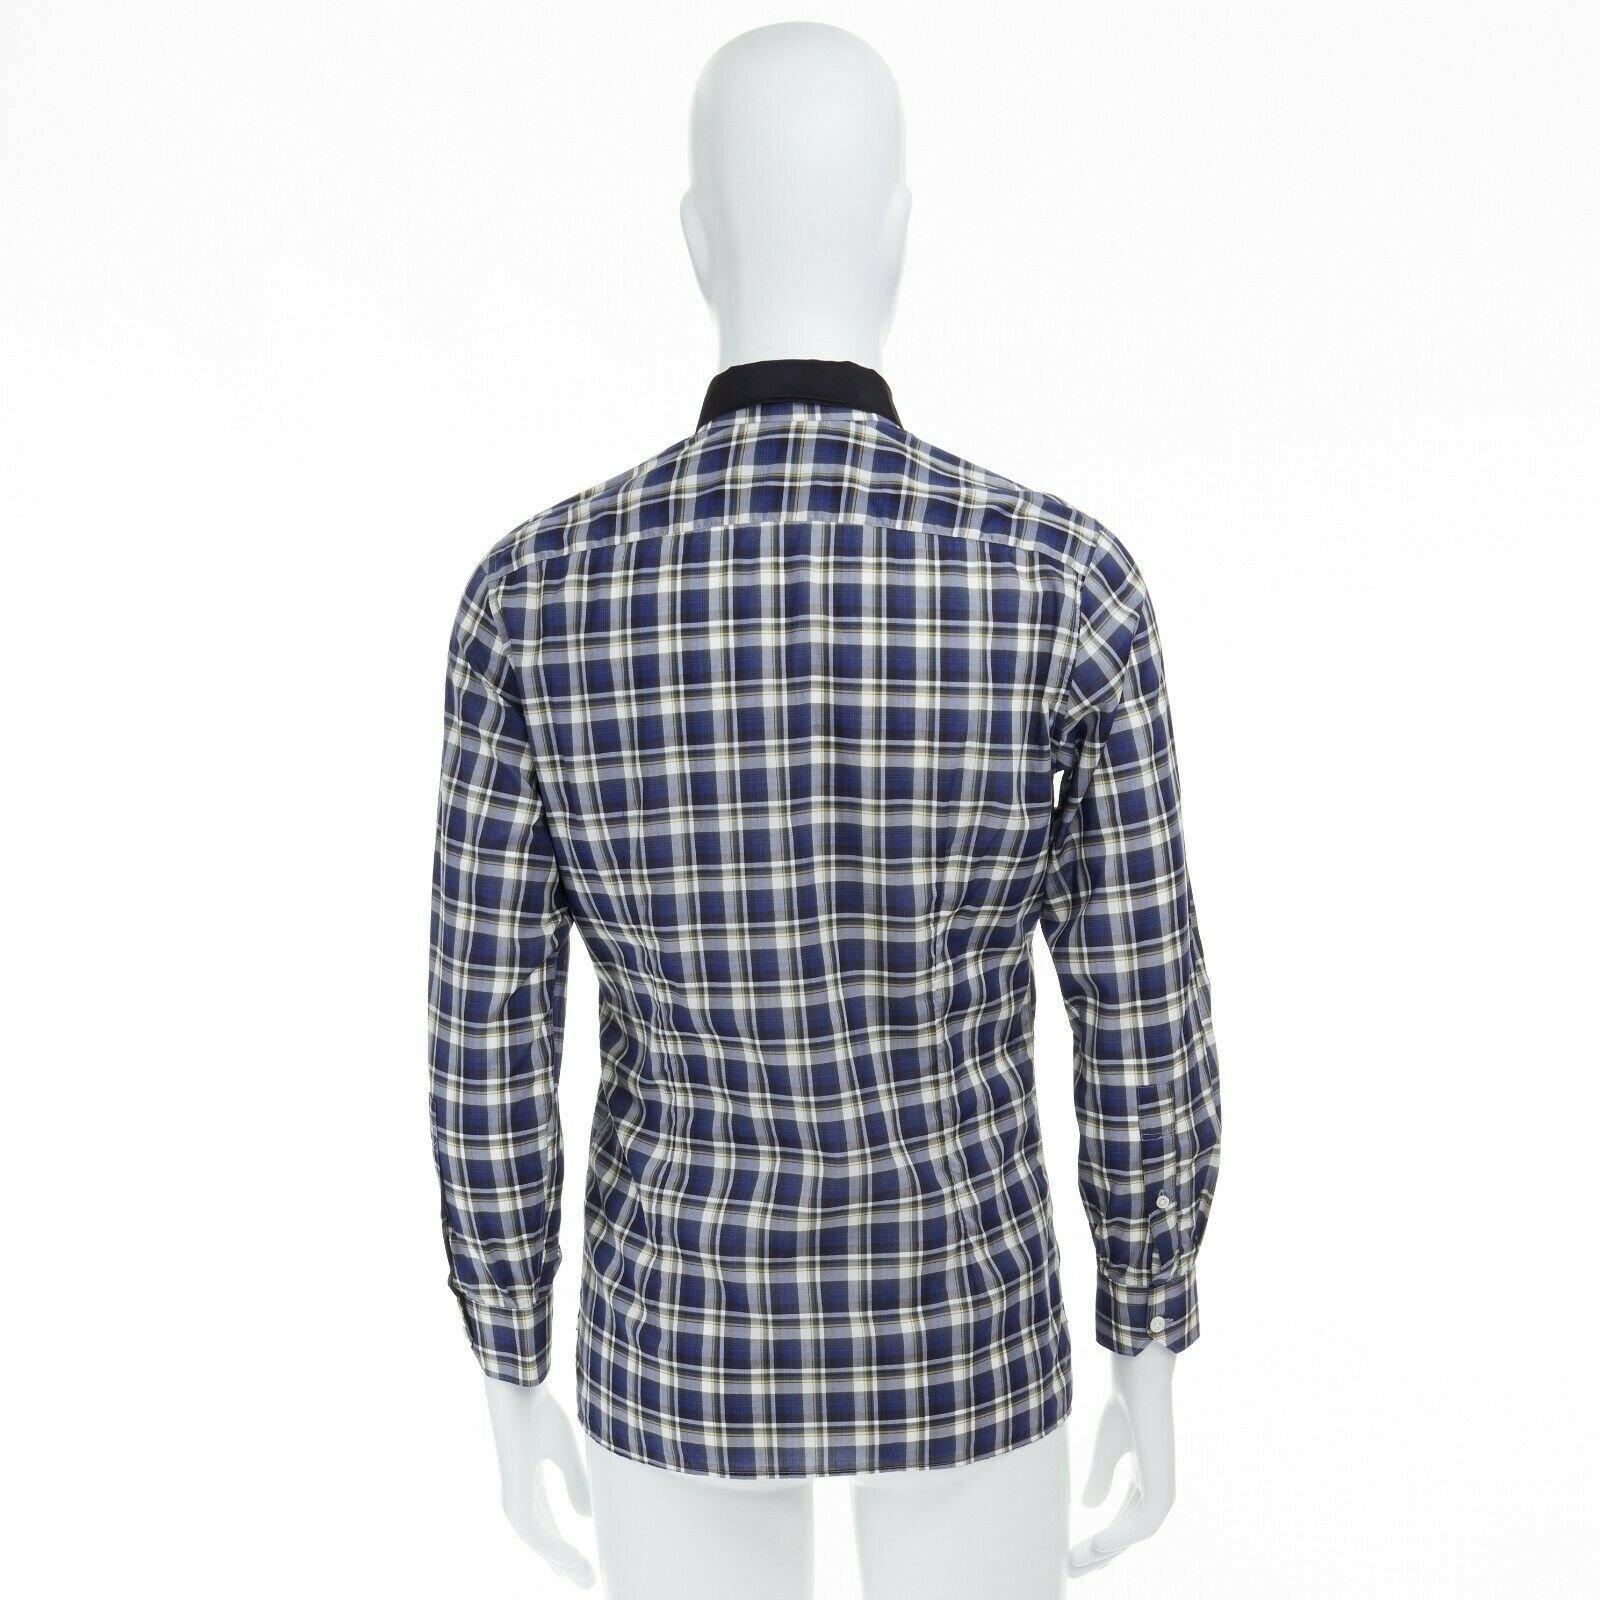 LANVIN ALBER ELBAZ blue checked cotton grosgrain ribbon collar shirt EU38 S In Good Condition For Sale In Hong Kong, NT